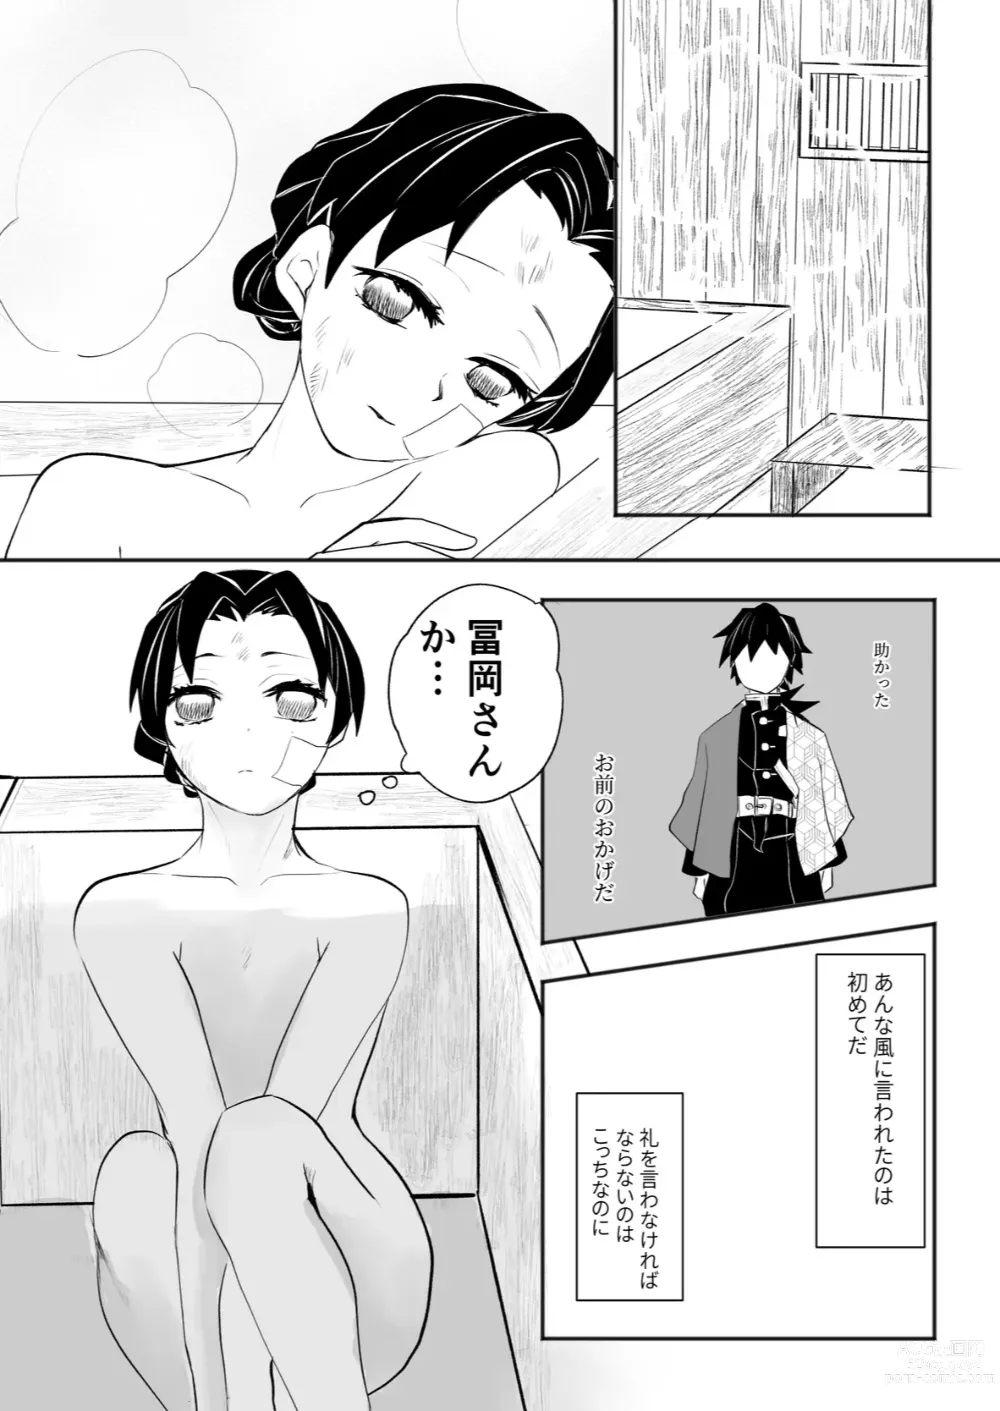 Page 7 of doujinshi Hodokete Tokeru